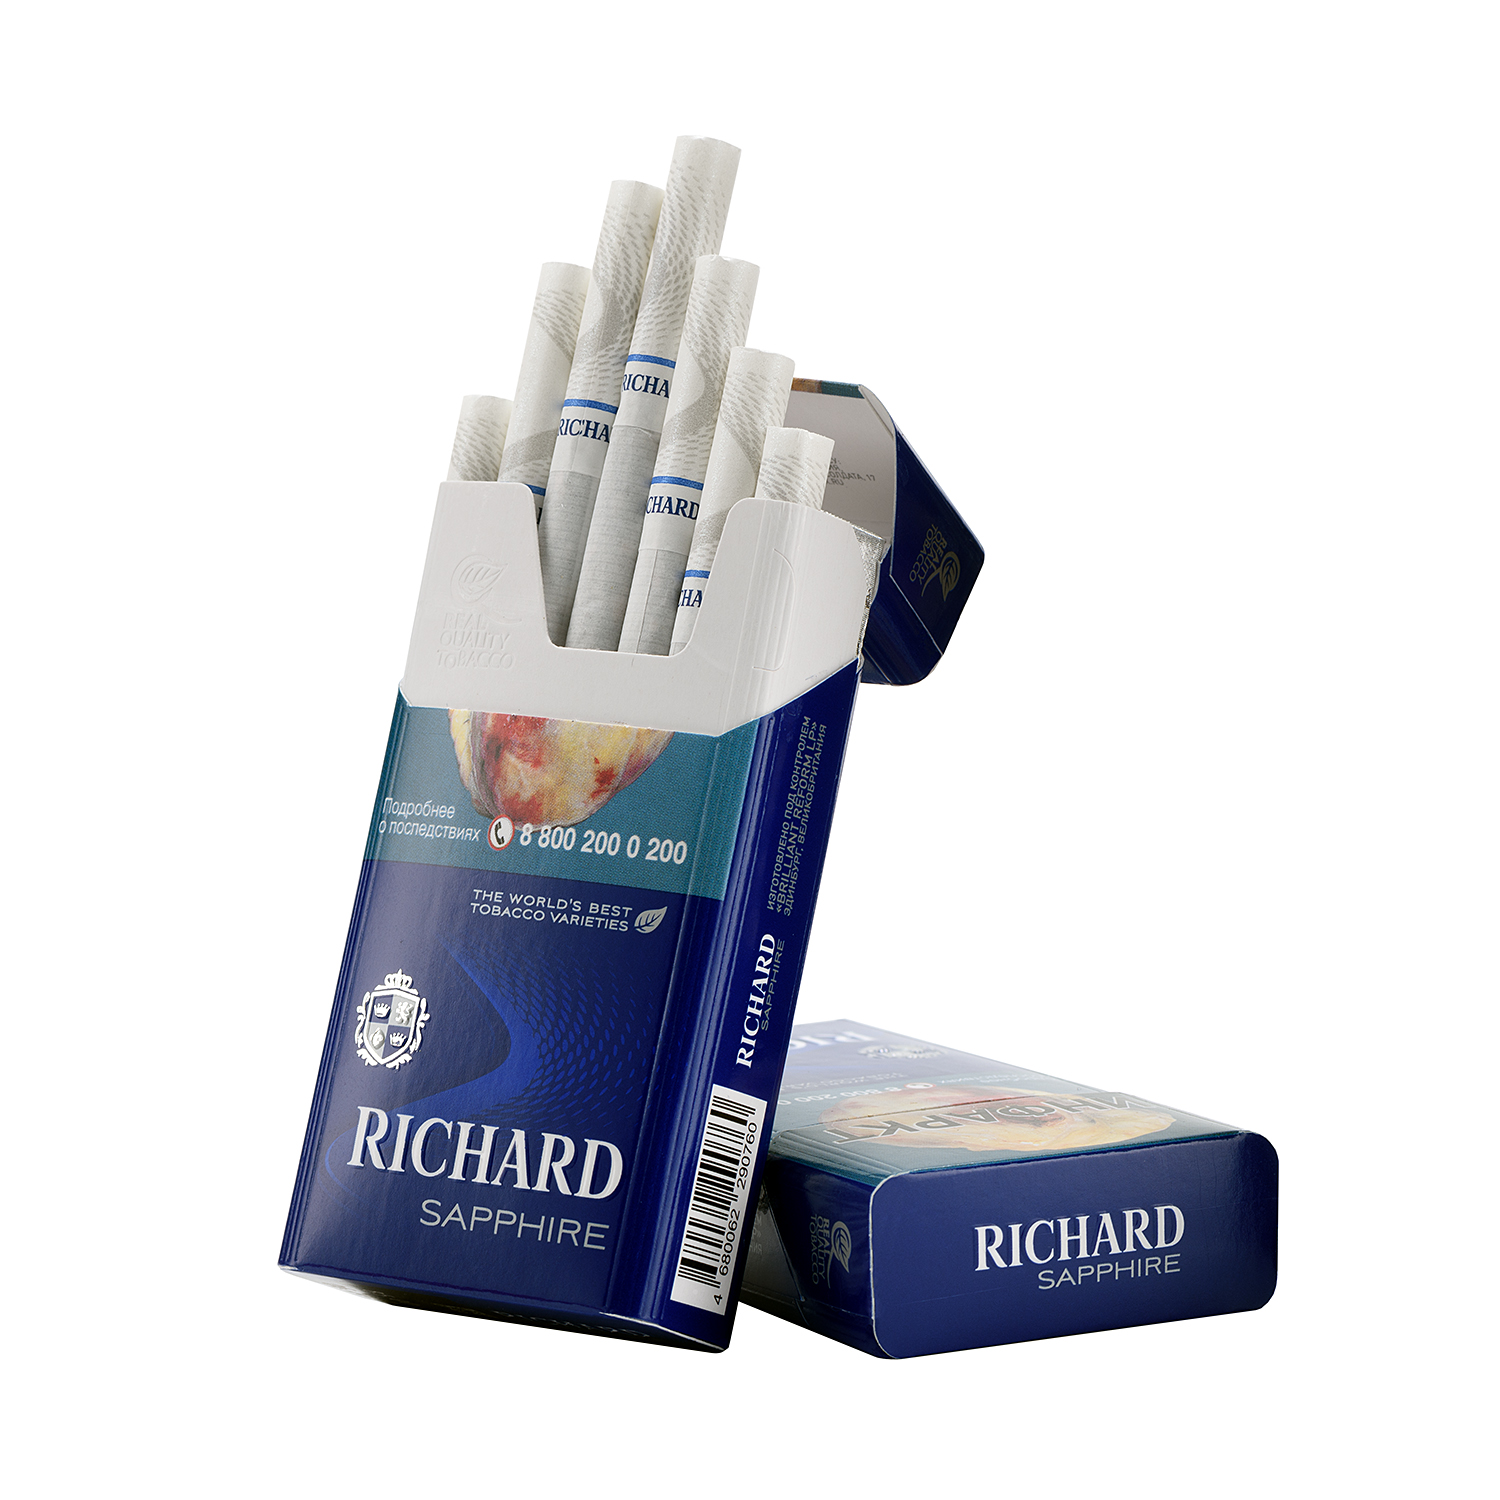 Сигареты Ричард Цена Где Купить